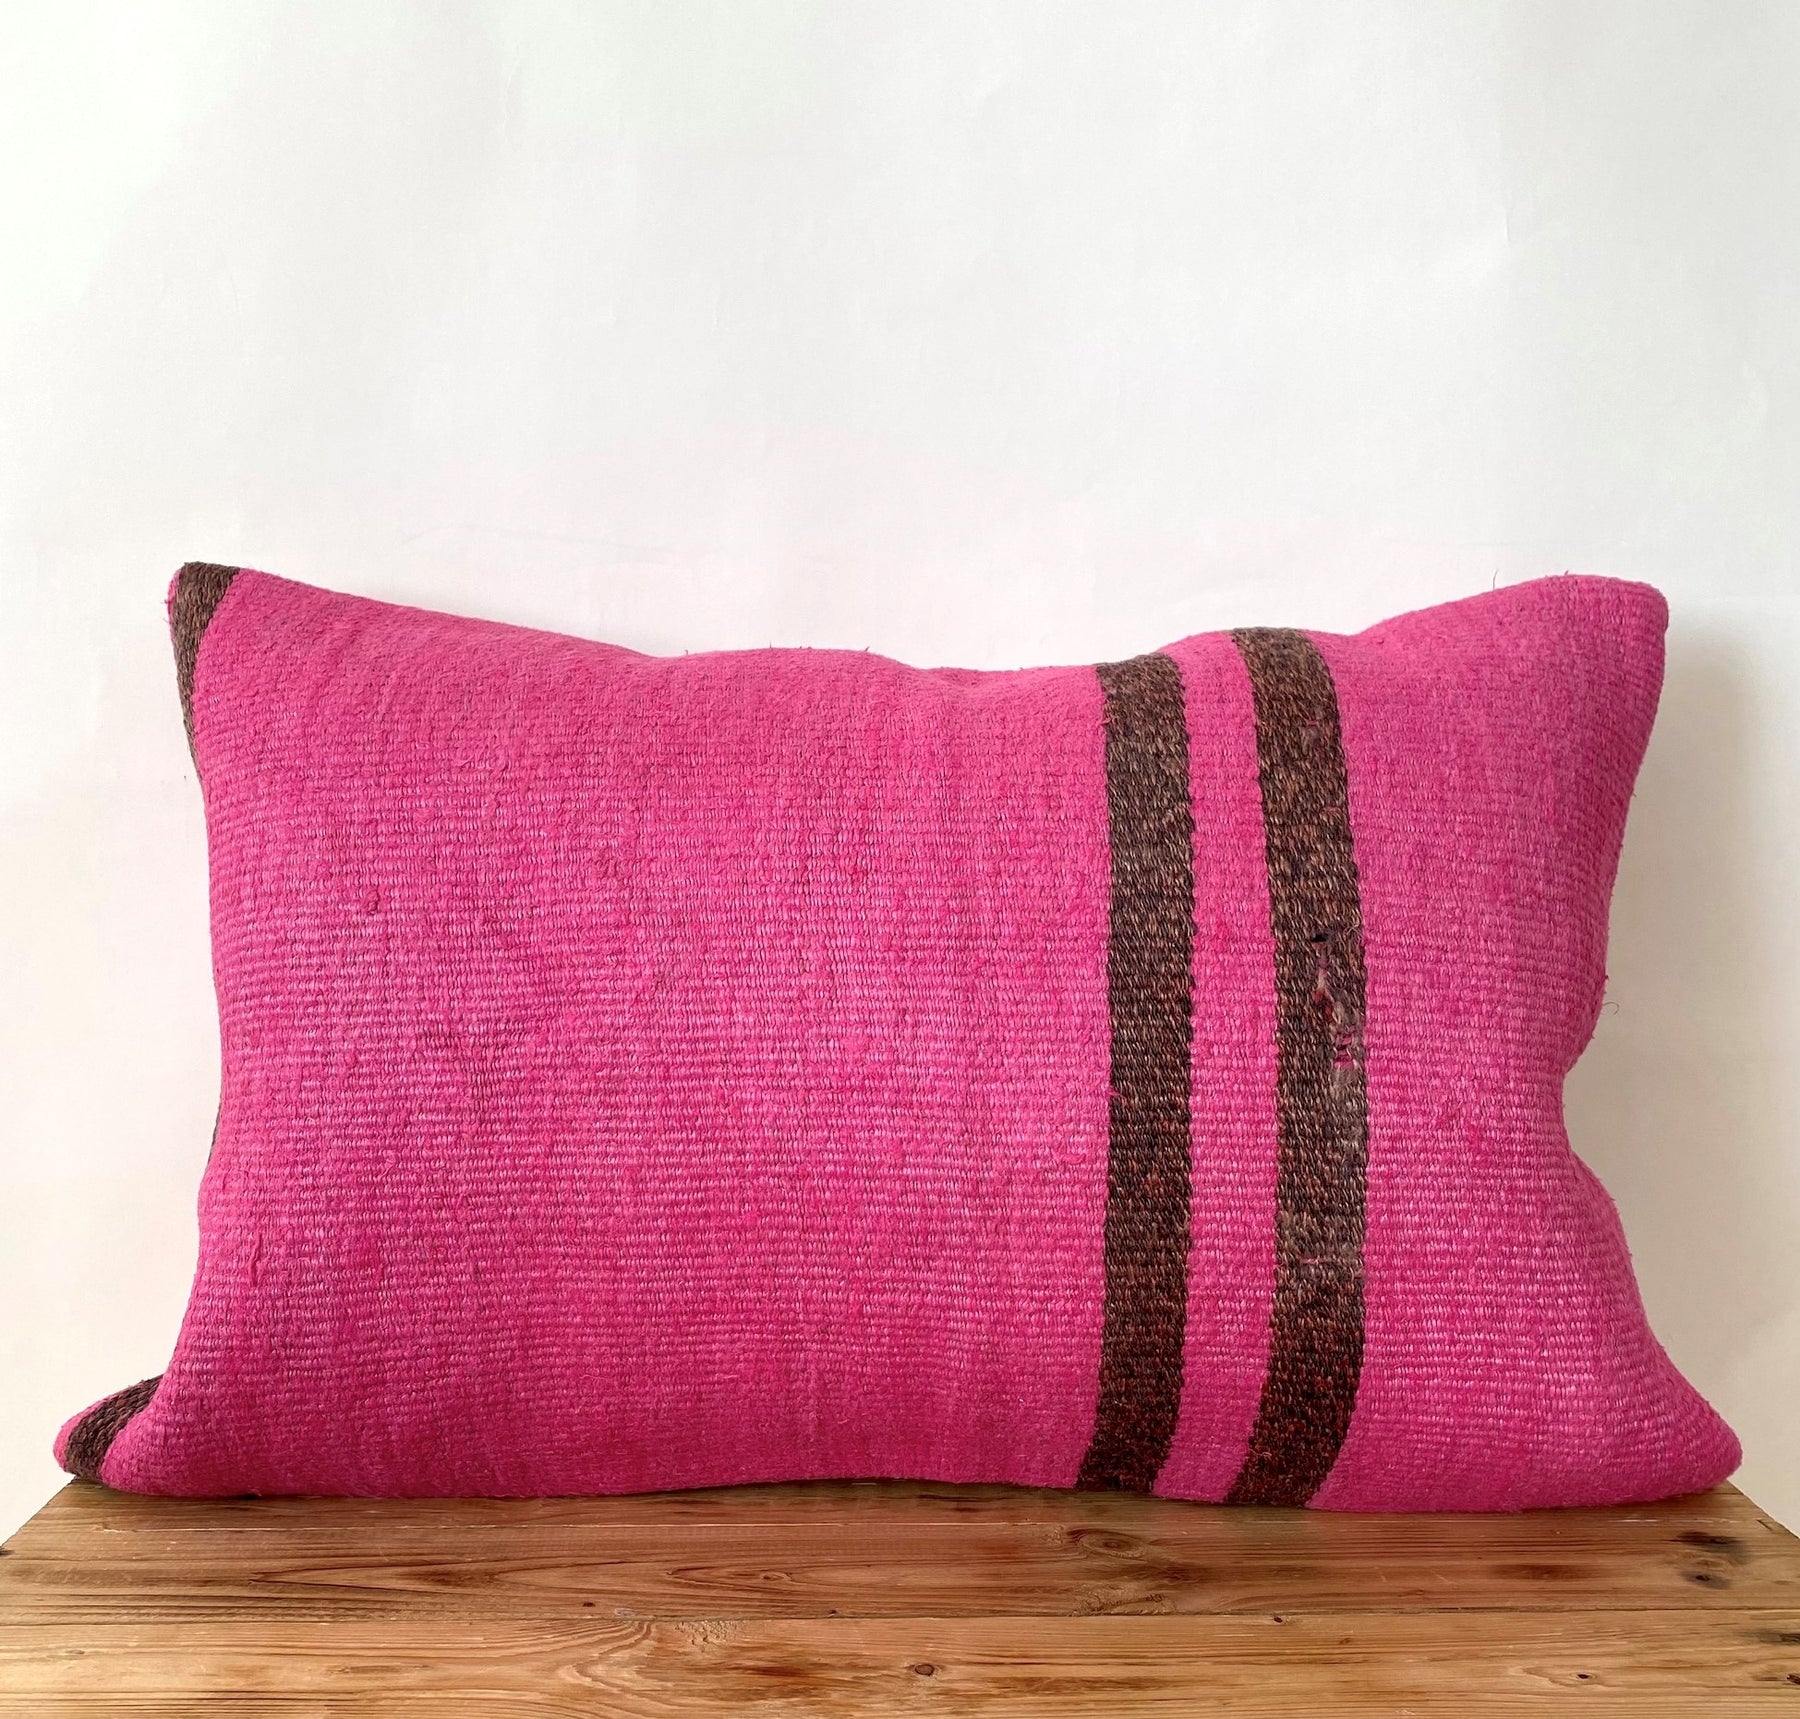 Cadey - Pink Hemp Pillow Cover - kudenrugs